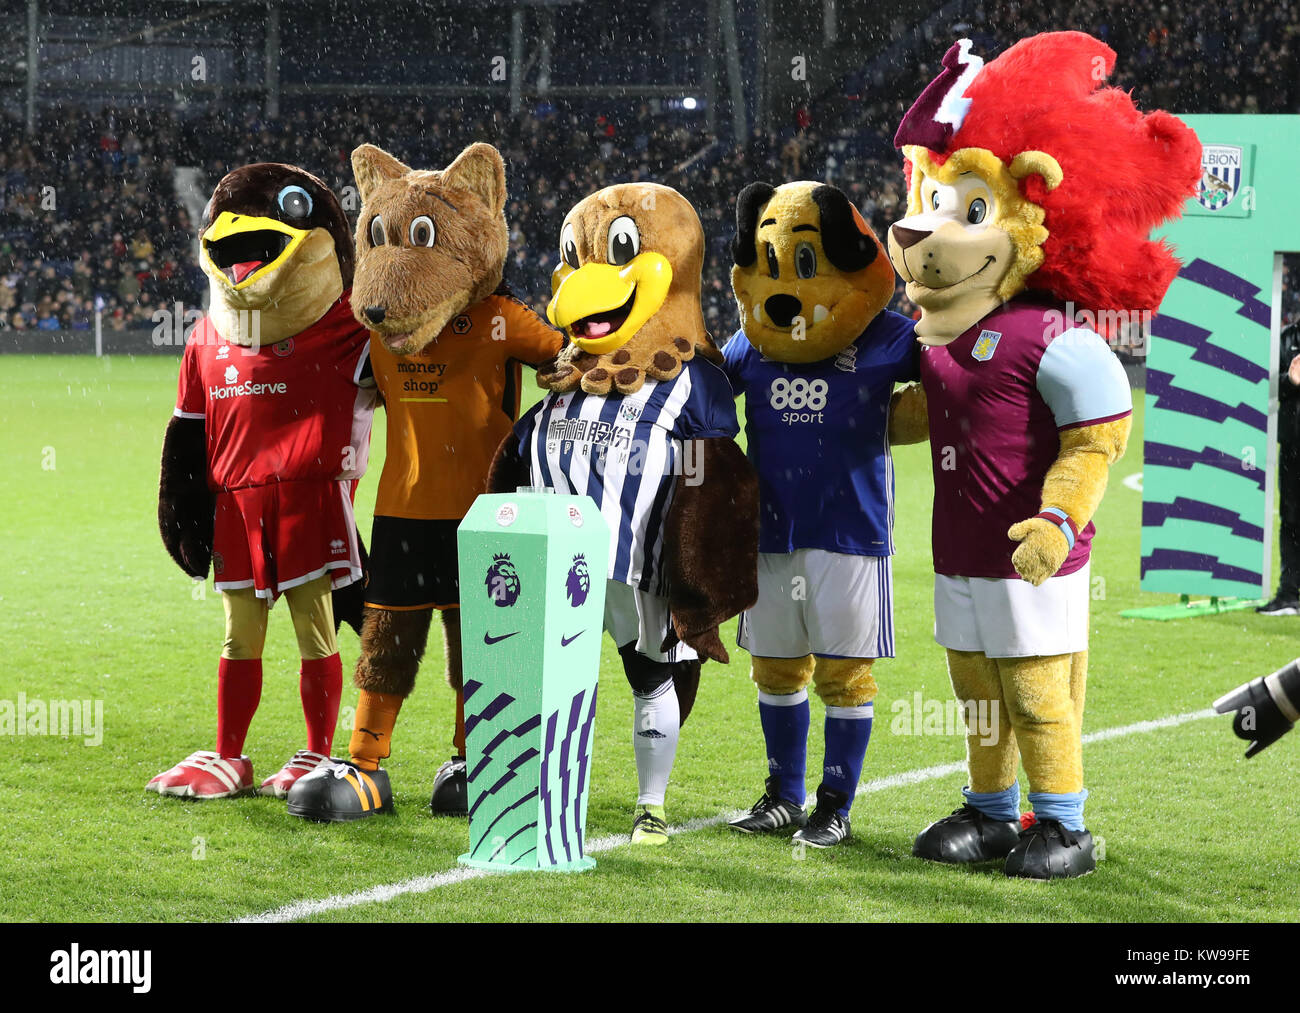 Las mascotas de Aston Villa, Birmingham City, lobos y unirse en Walsall  Baggie pájaro sobre el Majuelo pitch para recordar la mascota Richard  Eades, fallecido recientemente, antes de la Premier League en